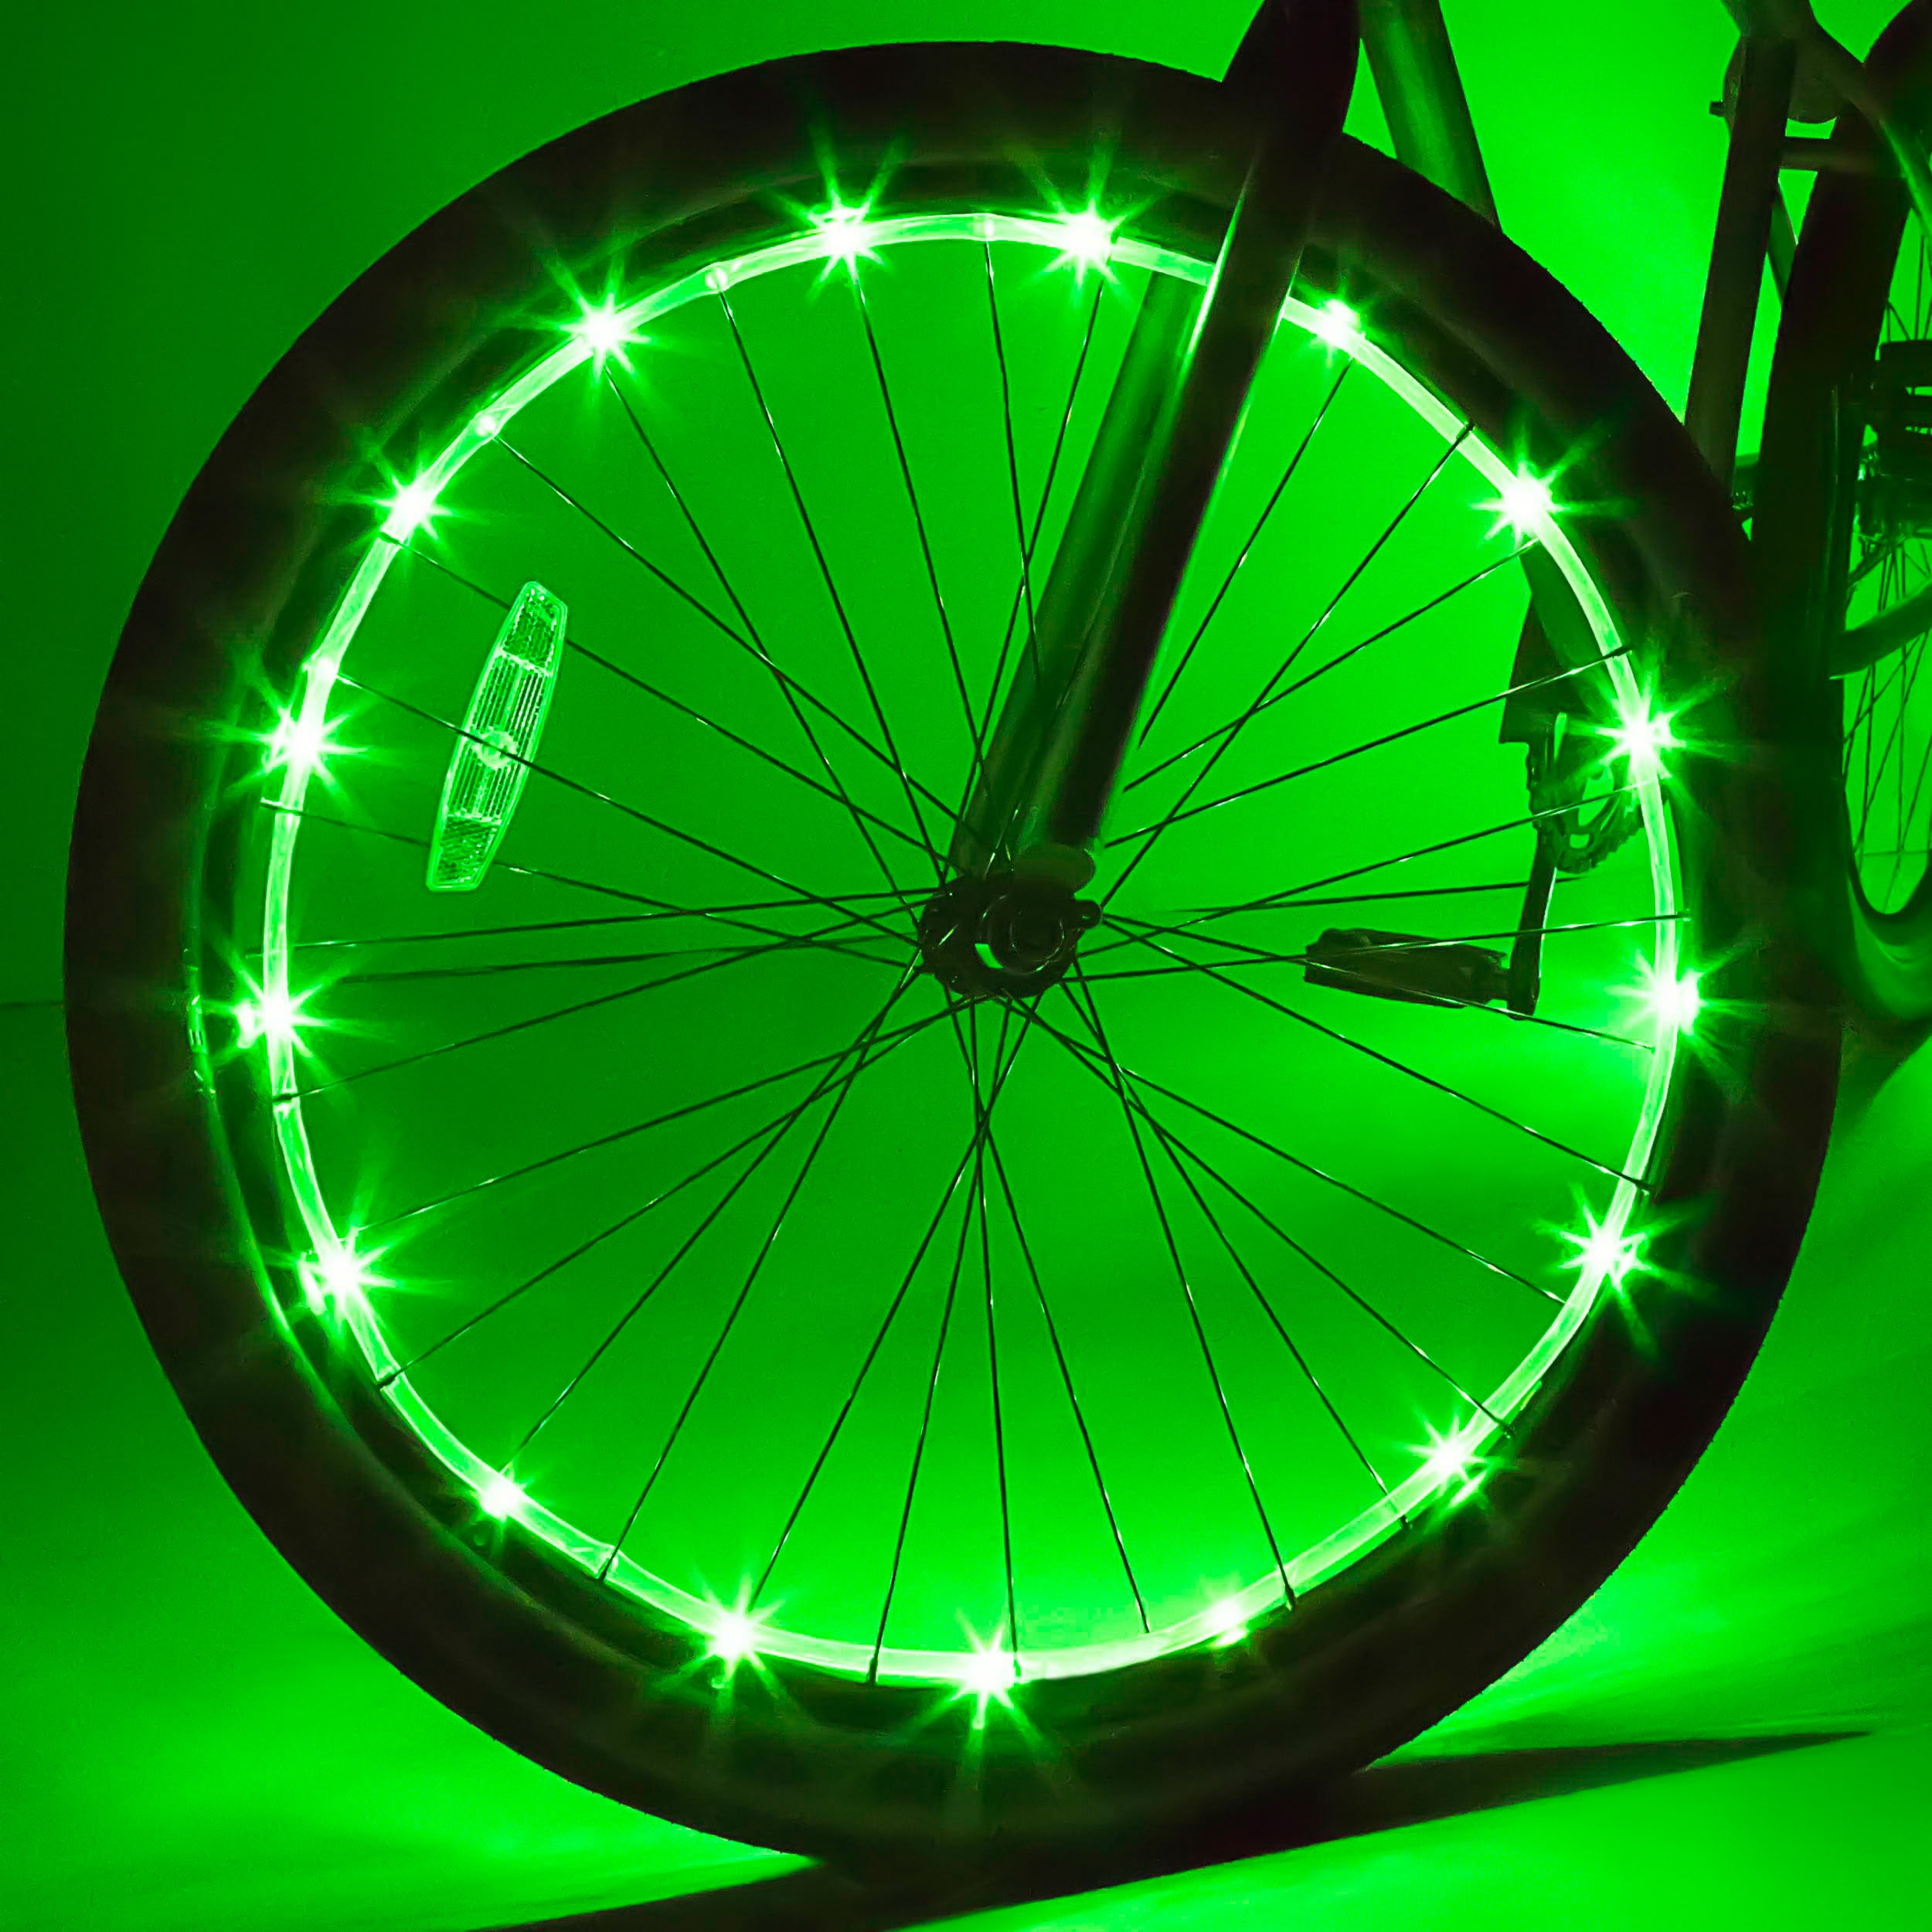 bike rim light